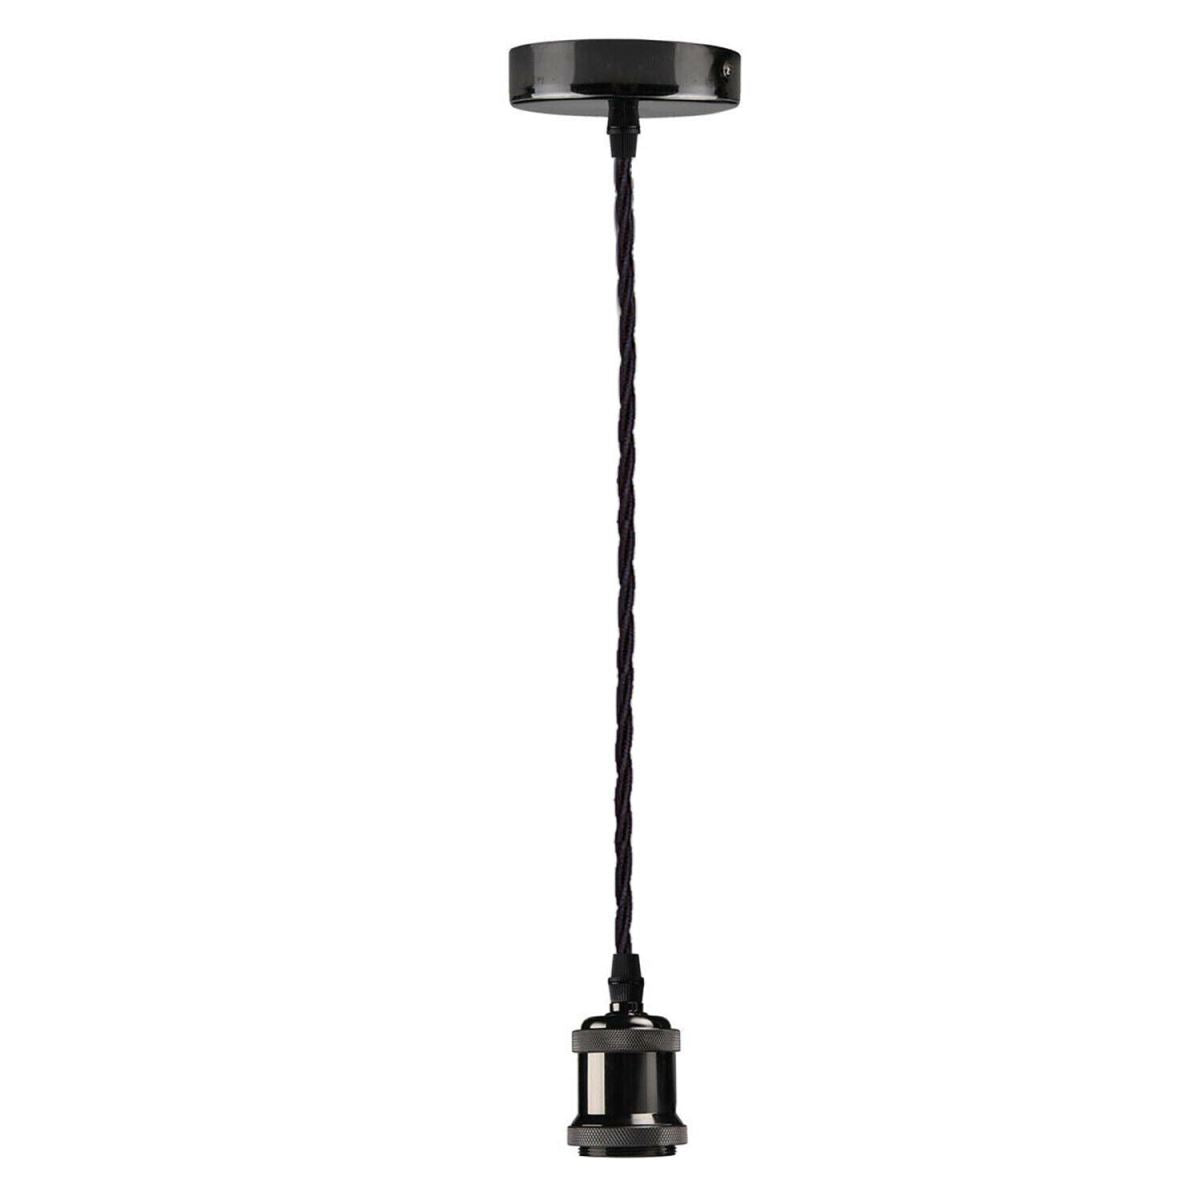 1m Black Twisted Cable E27 Base Shiny Black Holder~1713 - LEDSone UK Ltd